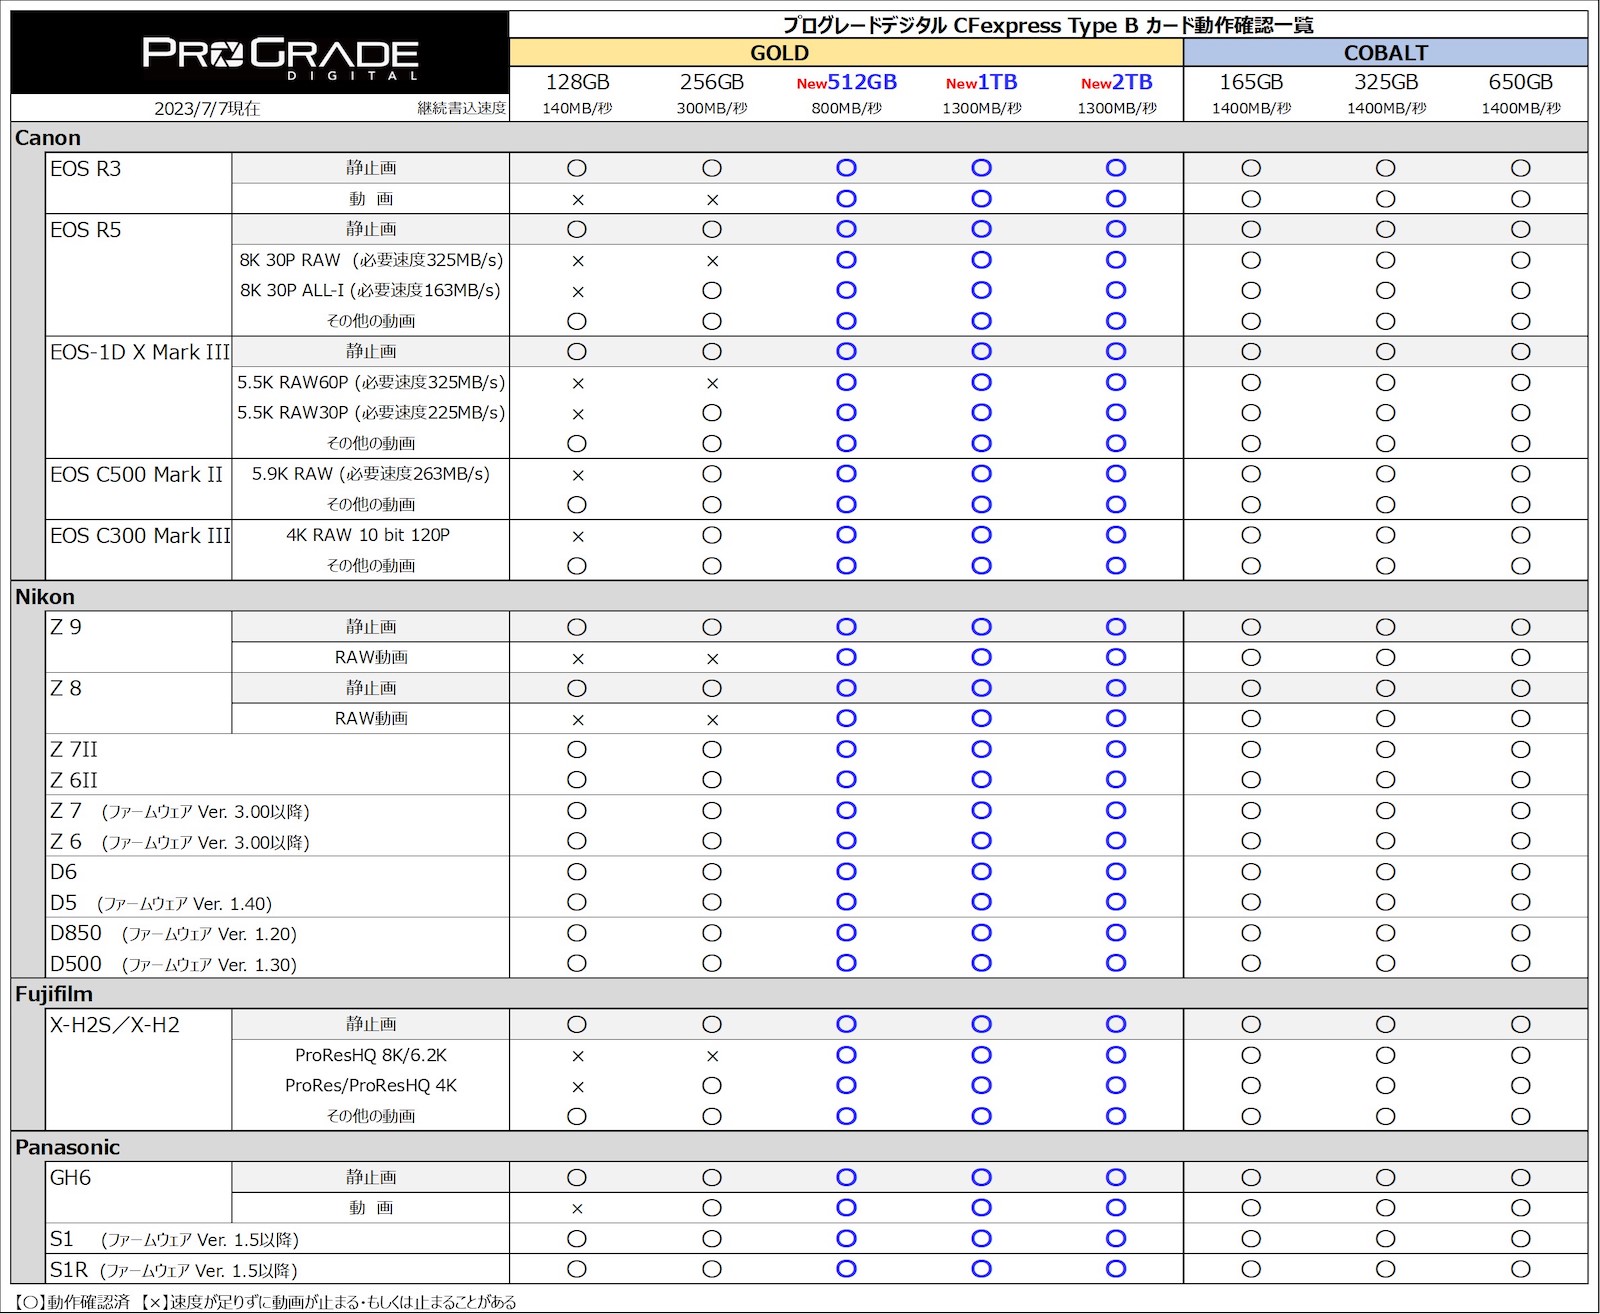 ProGrade series comparison chart 1